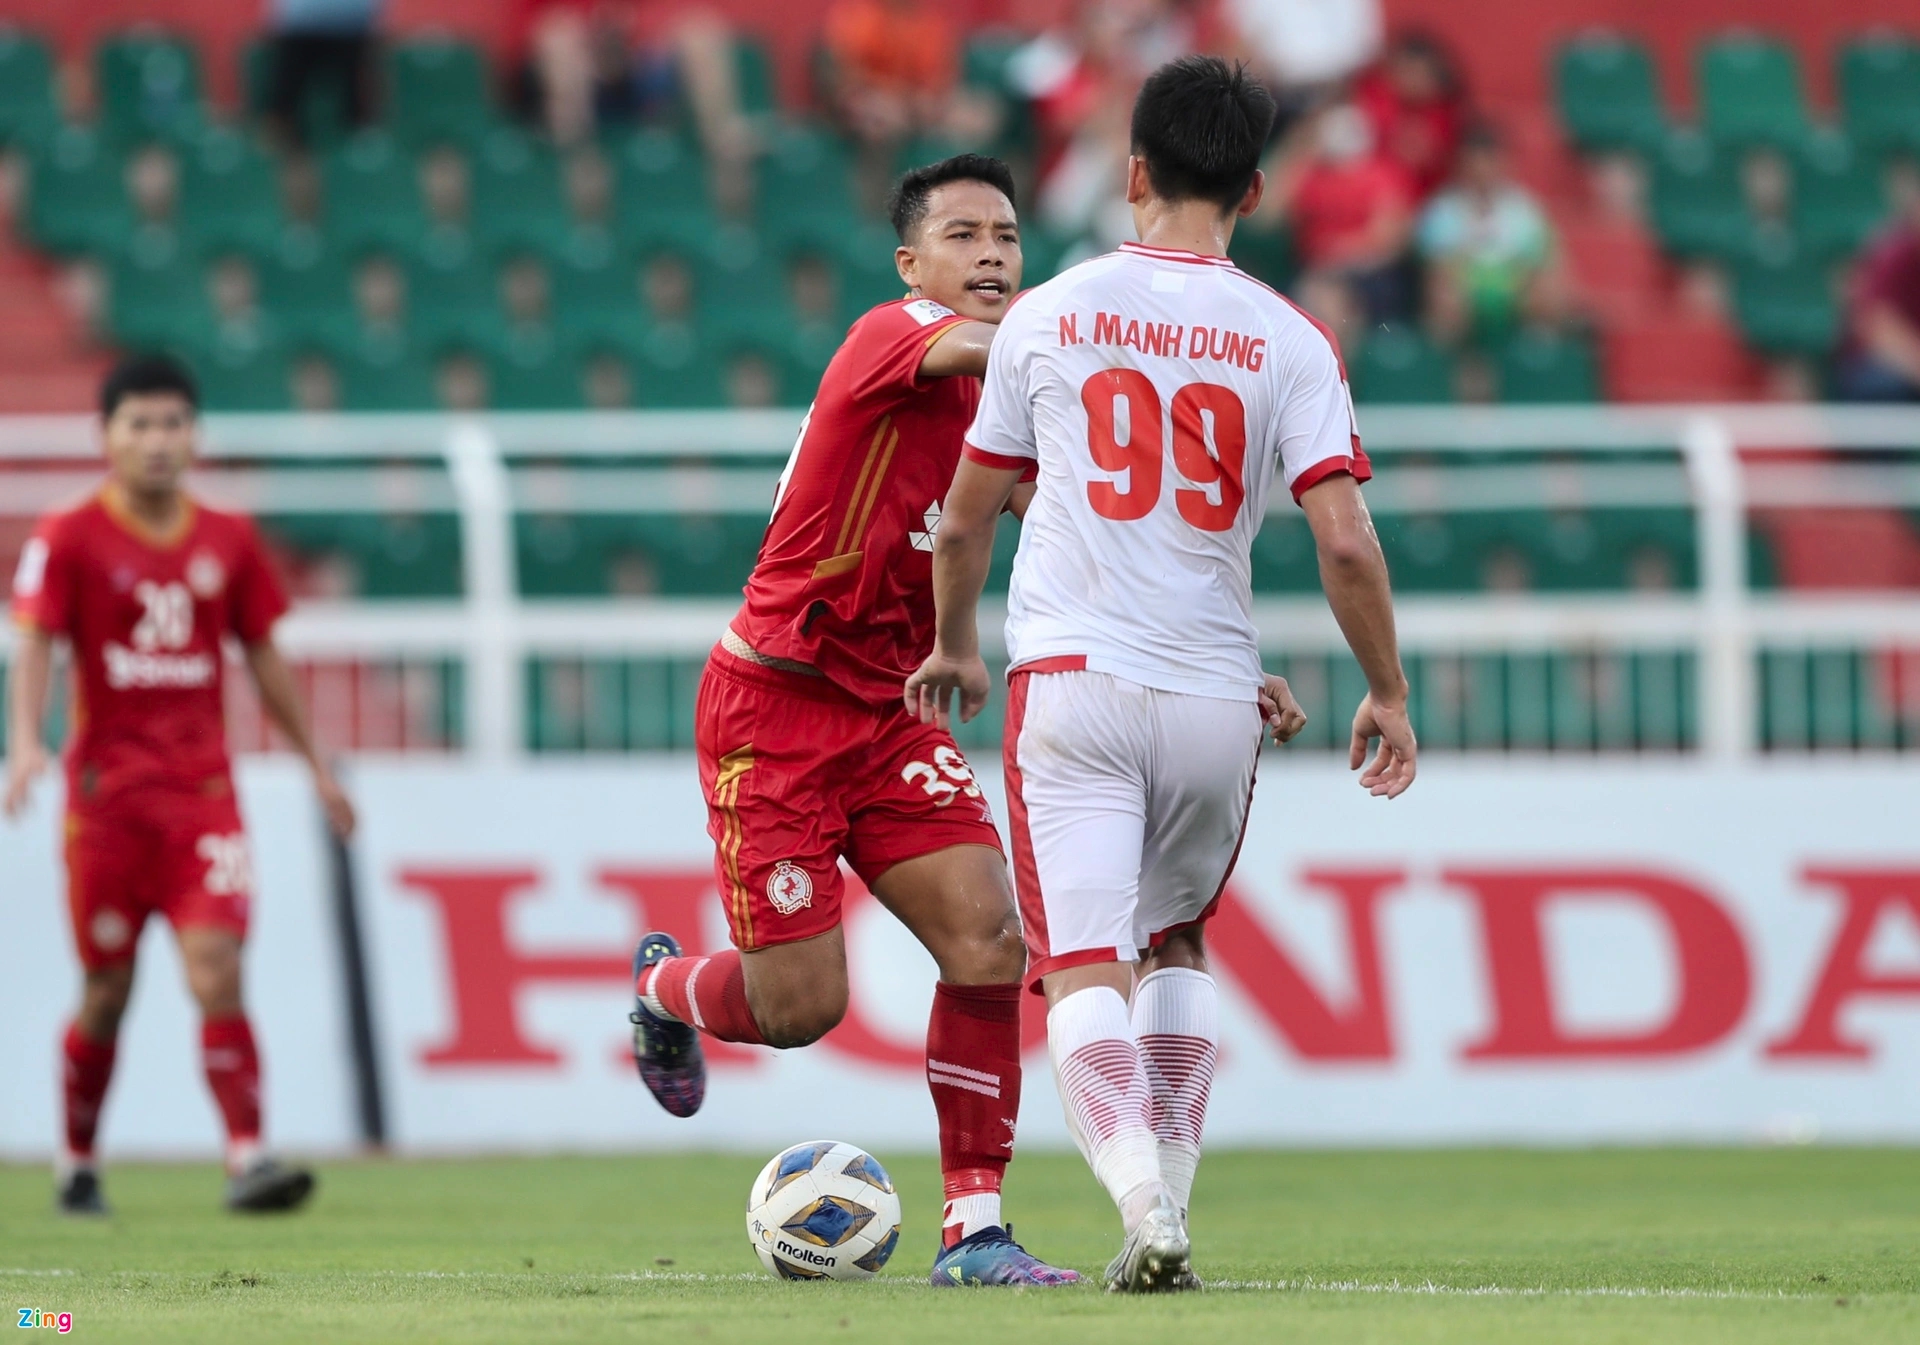 Nhâm Mạnh Dũng chơi nhạt nhòa trong lần đầu đá chính ở AFC Cup - ảnh 3